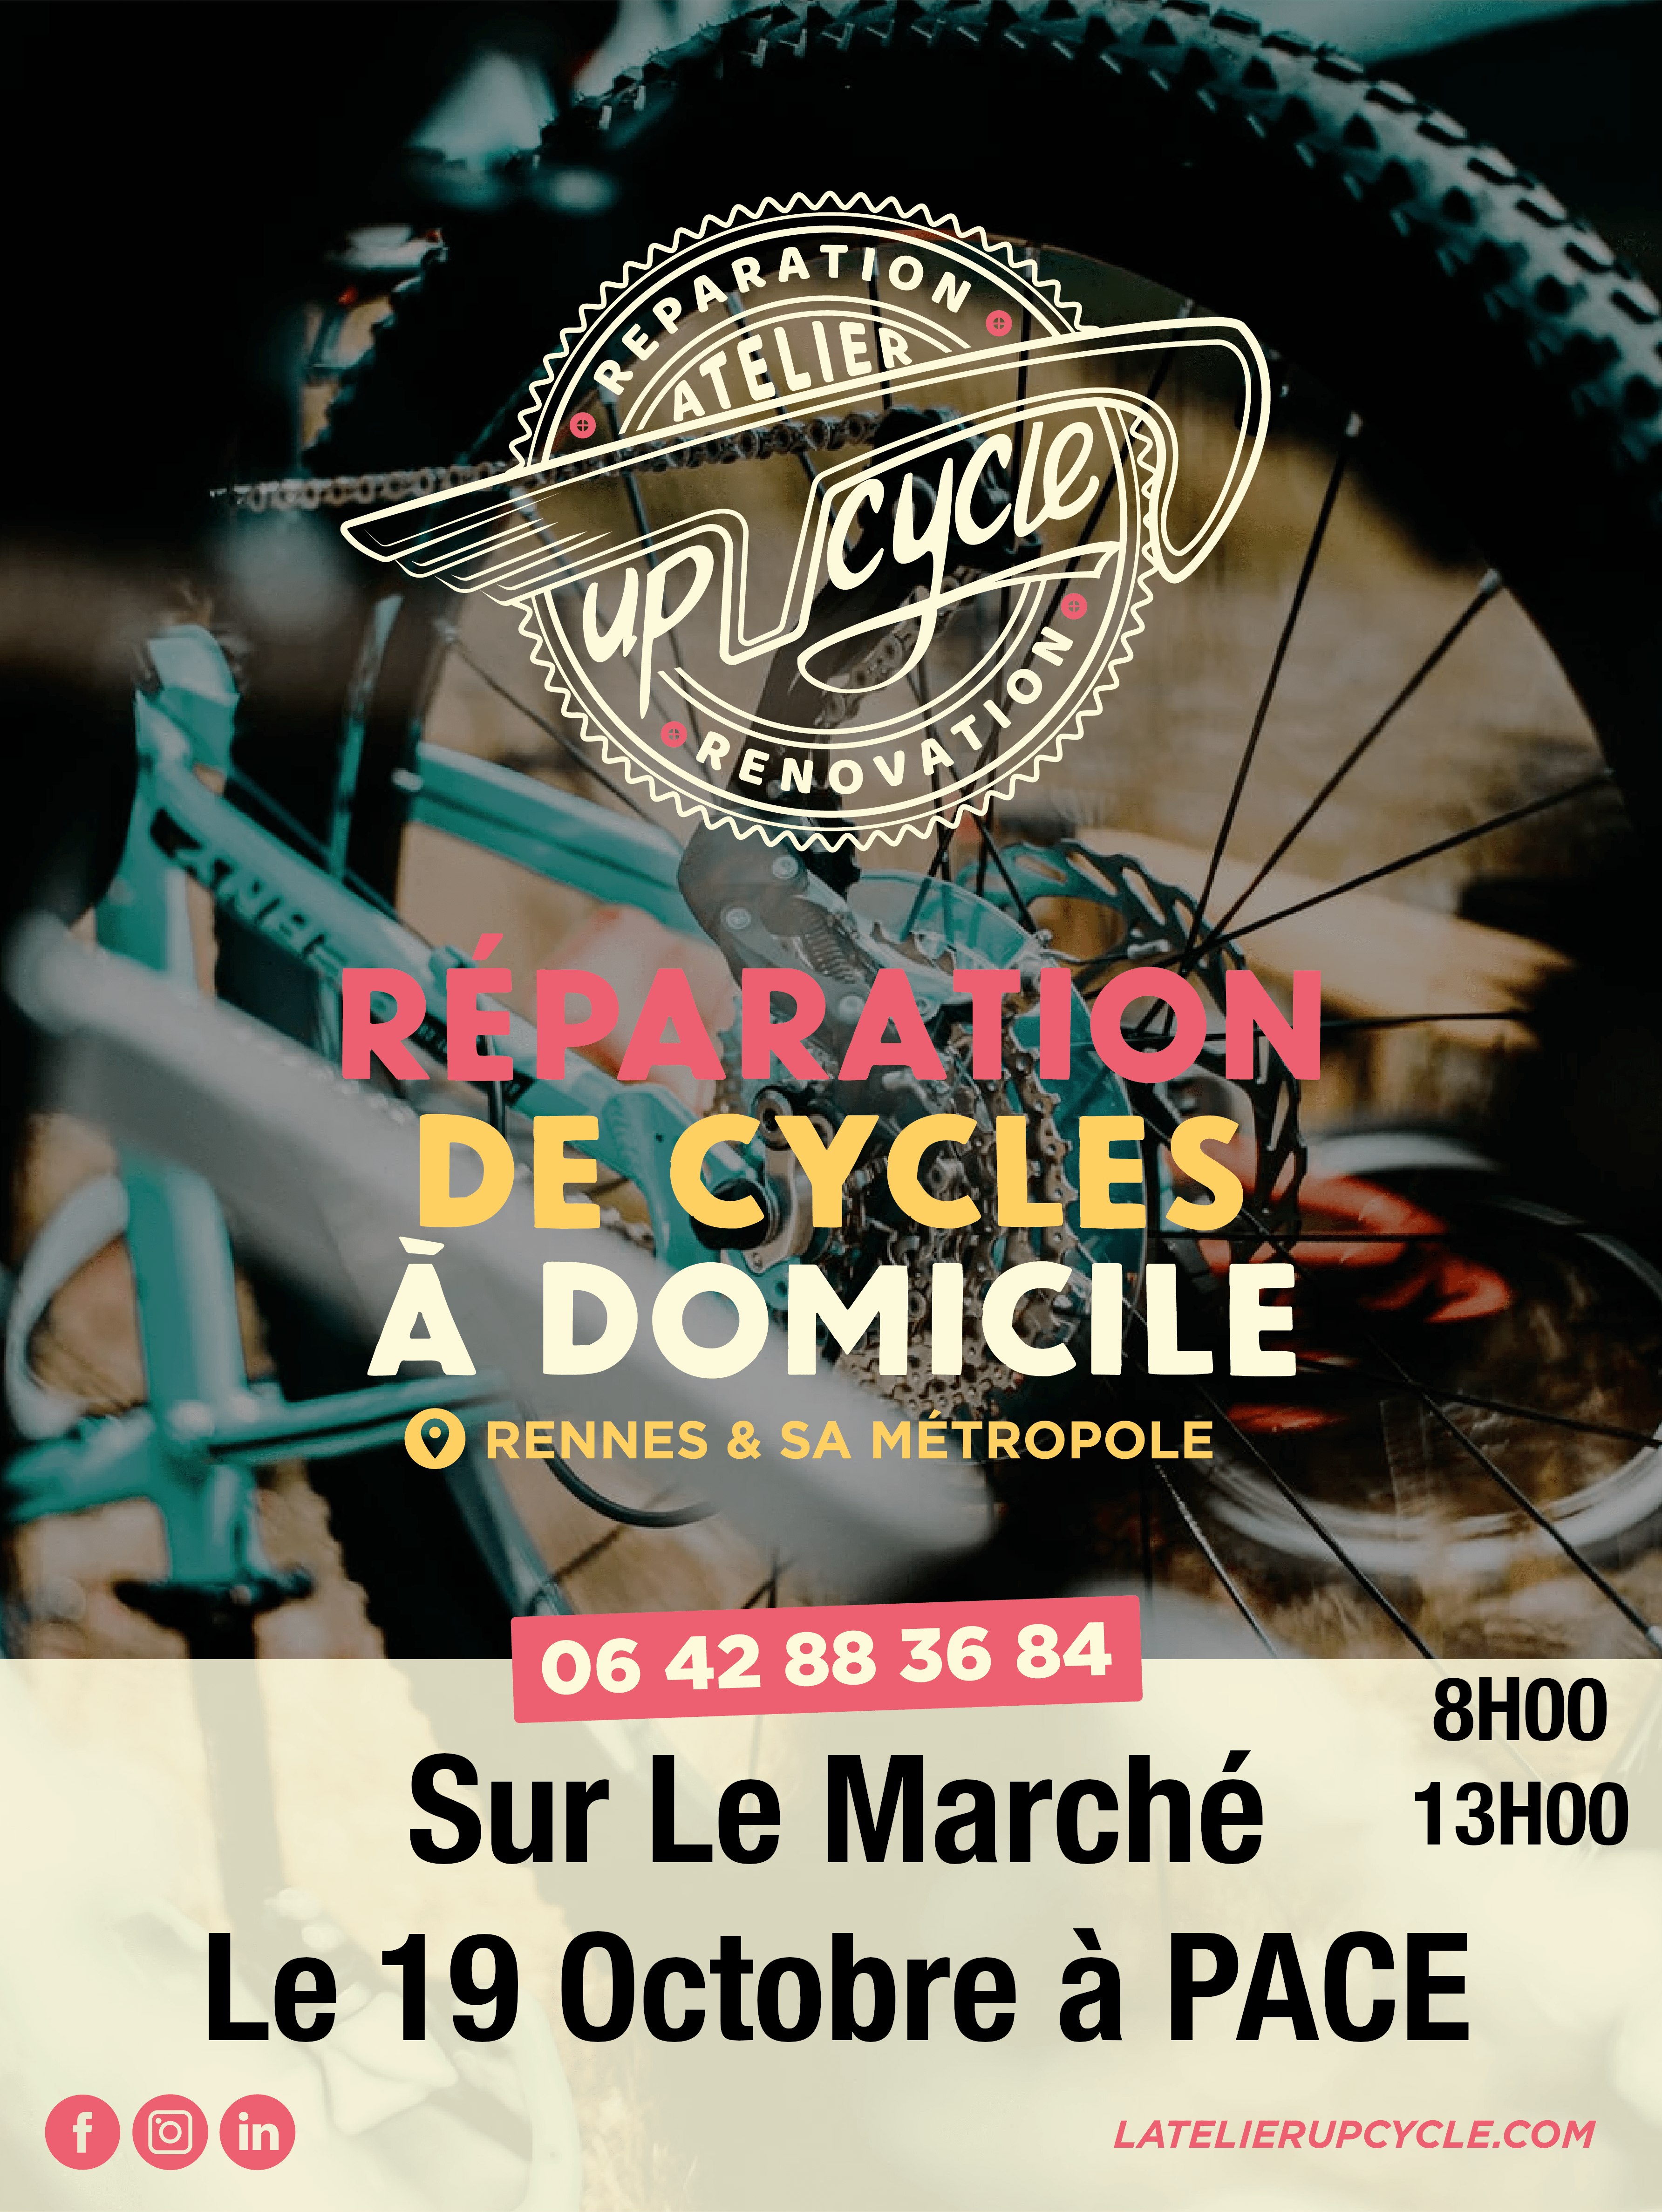 L’Atelier Up’Cycle réparations vélos au CHU PONTCHAILLOU